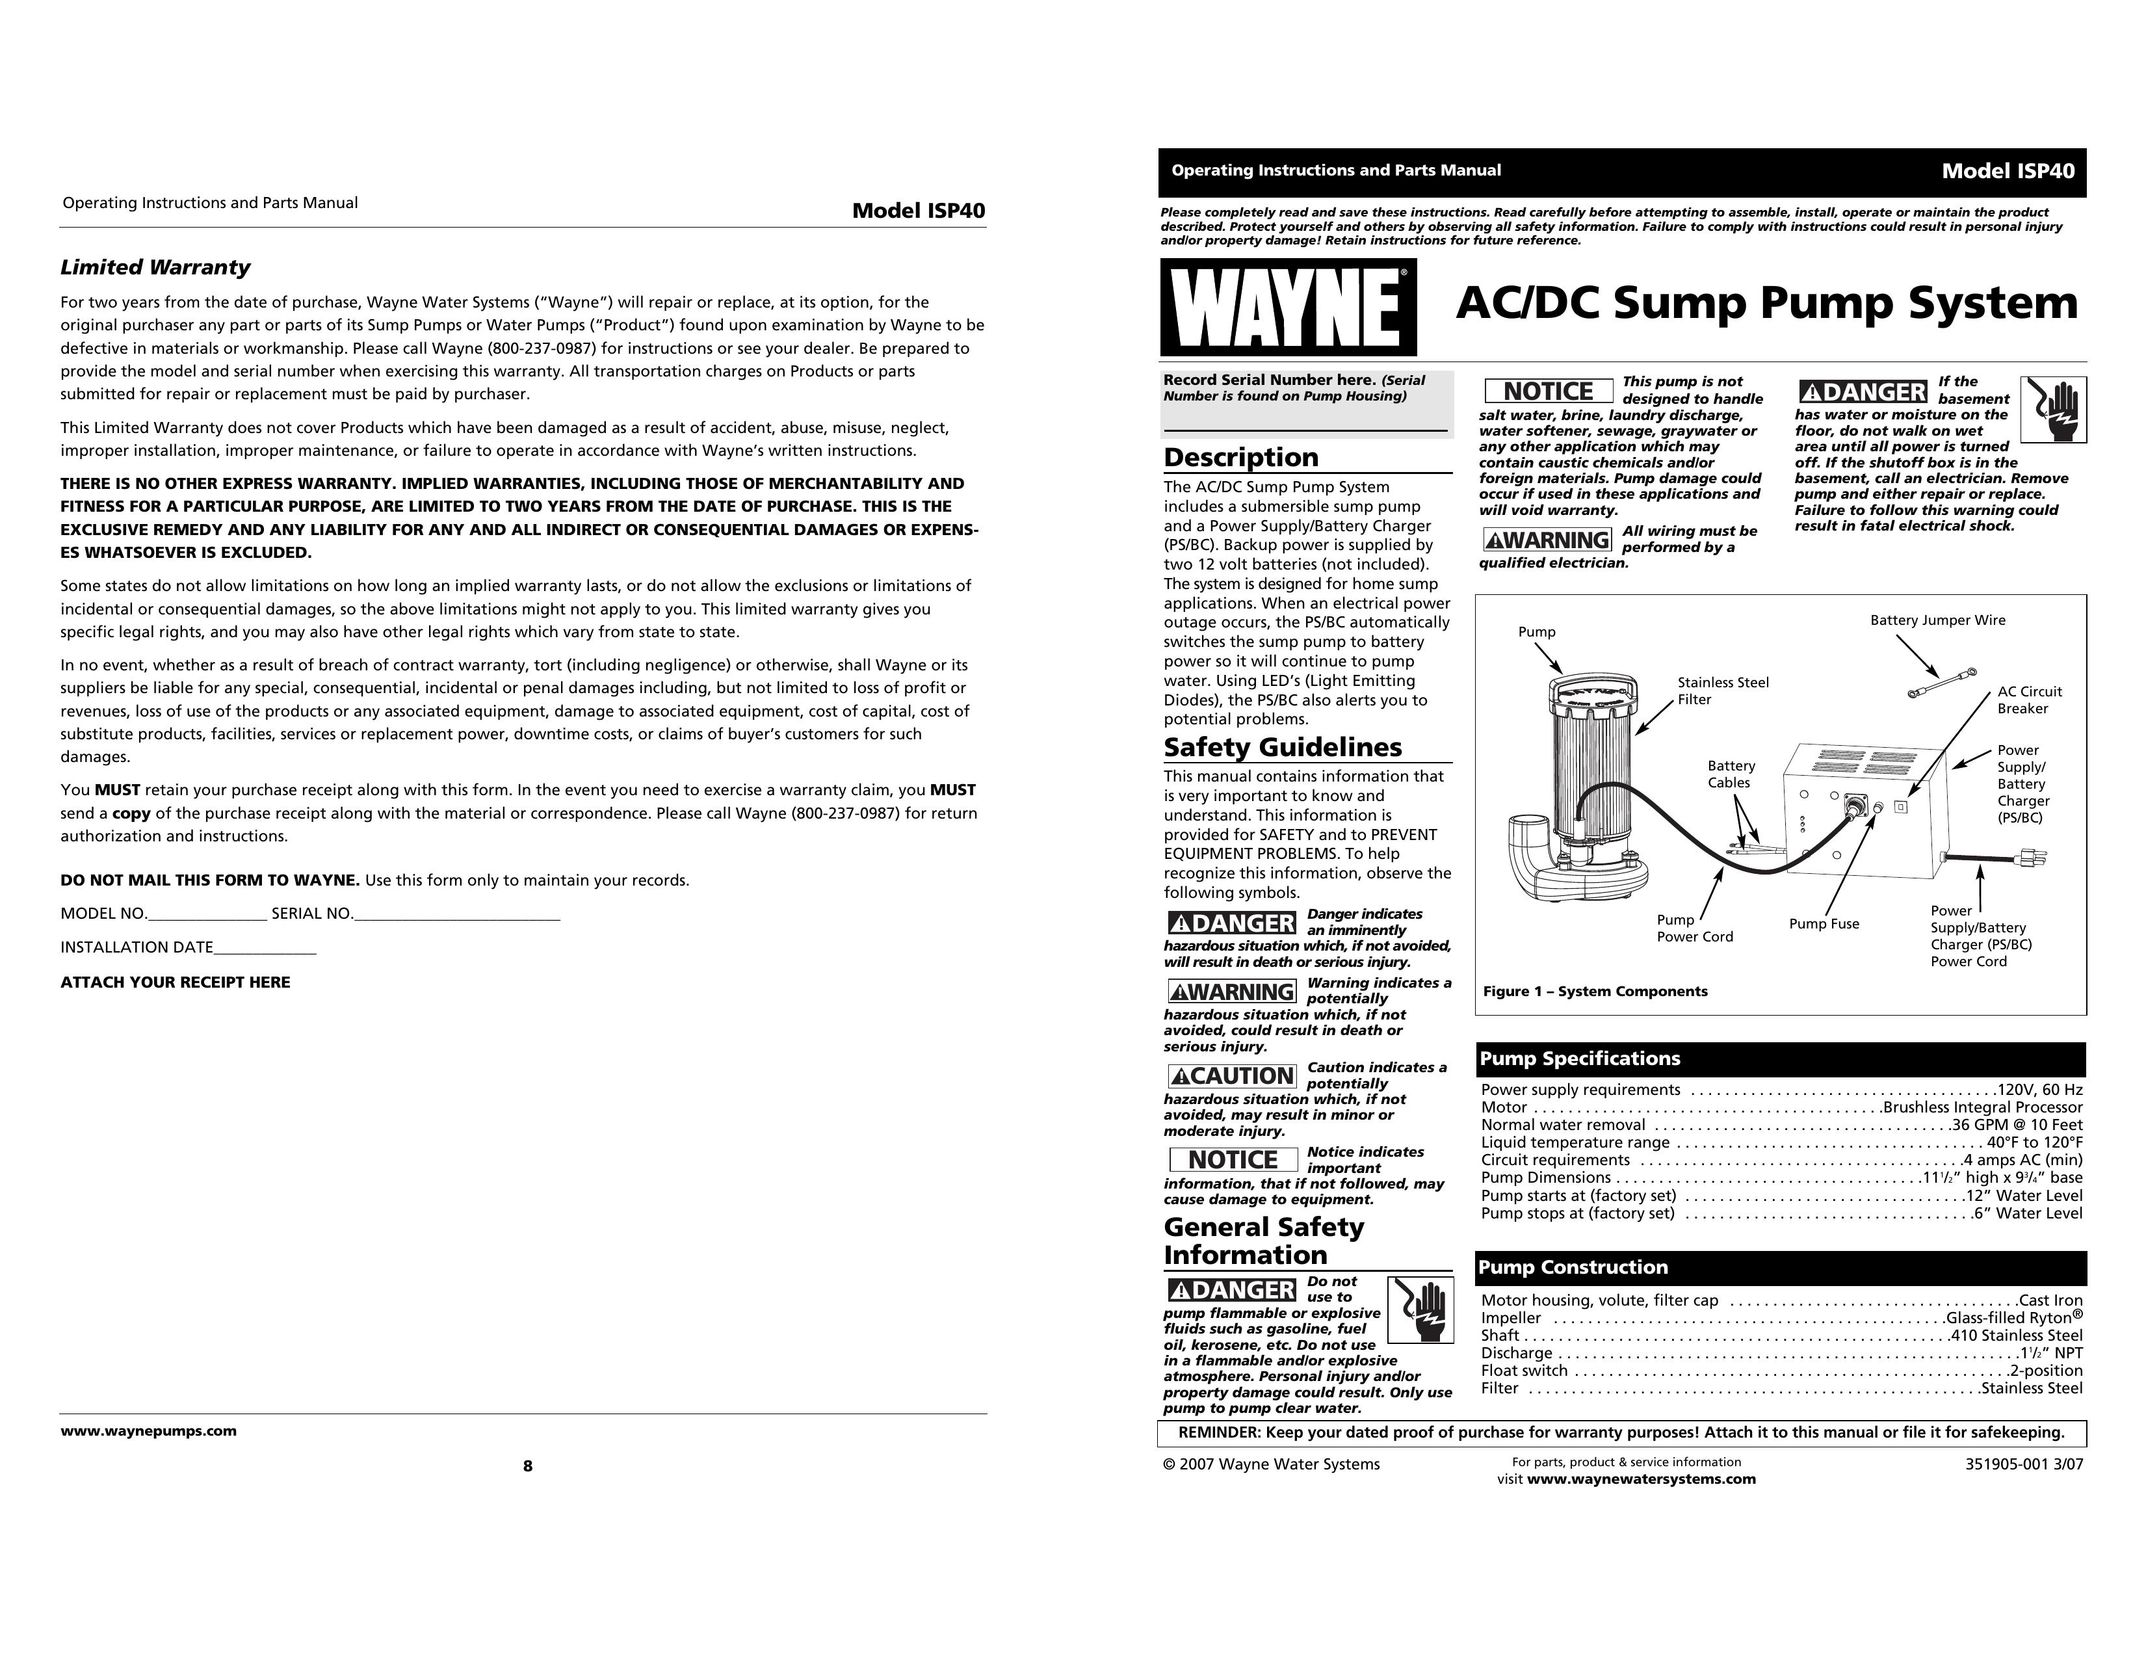 Wayne ISP40 Plumbing Product User Manual